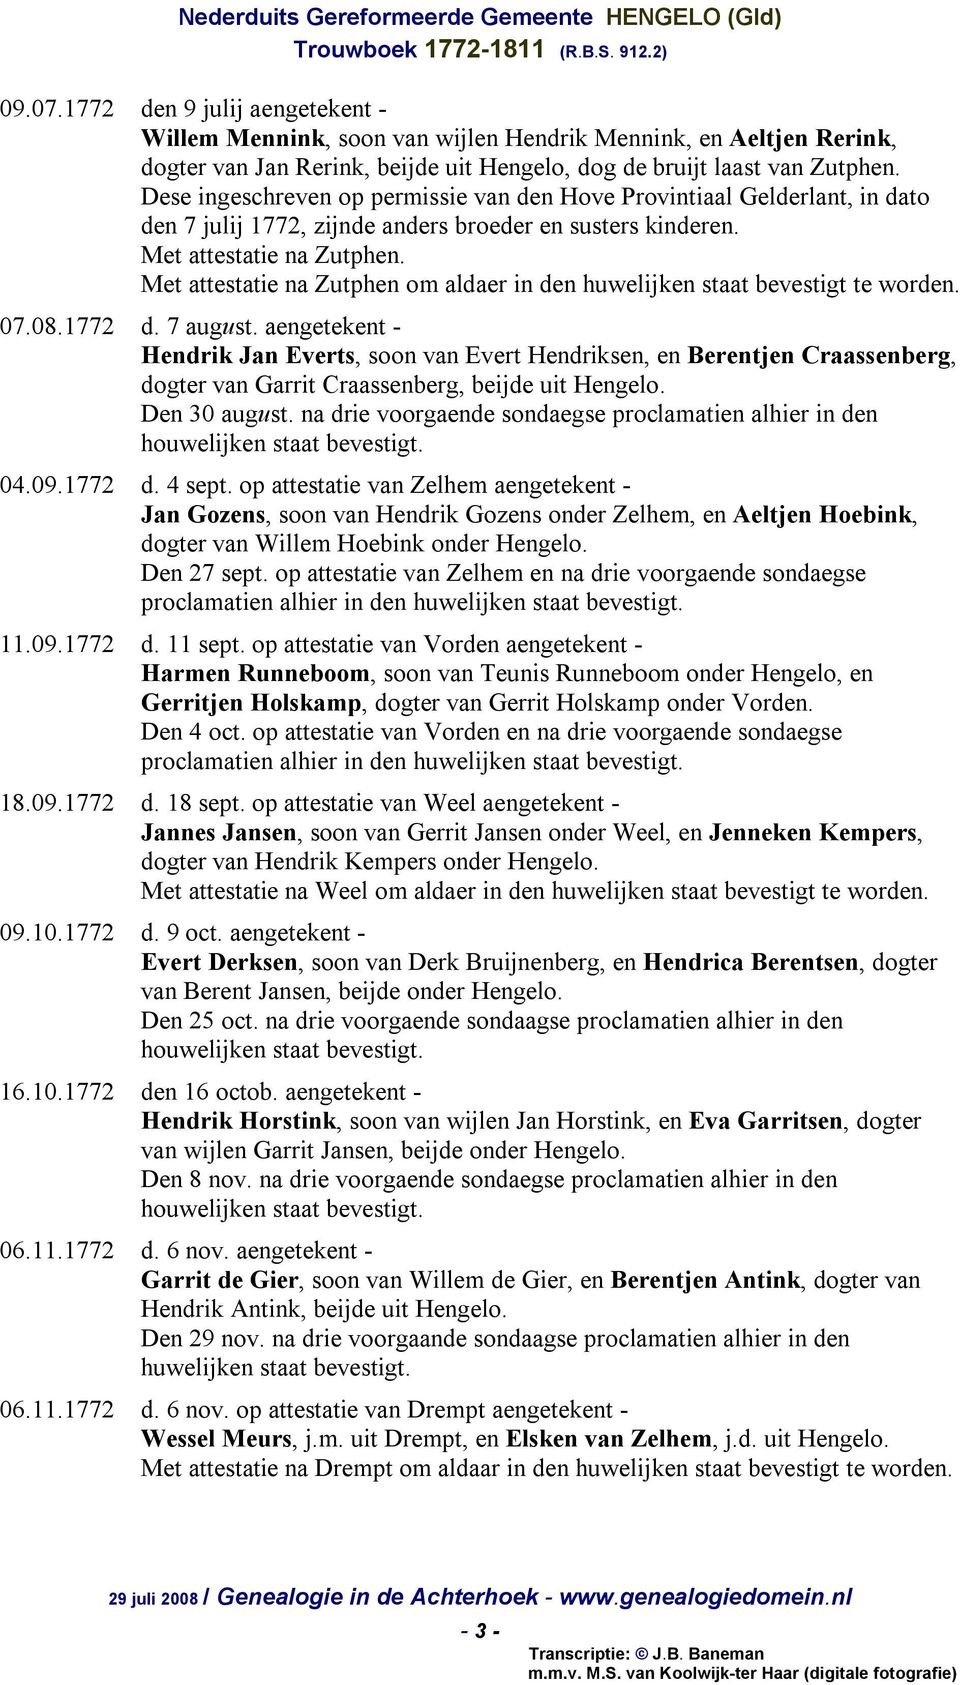 Met attestatie na Zutphen om aldaer in den huwelijken staat bevestigt te 07.08.1772 d. 7 august.